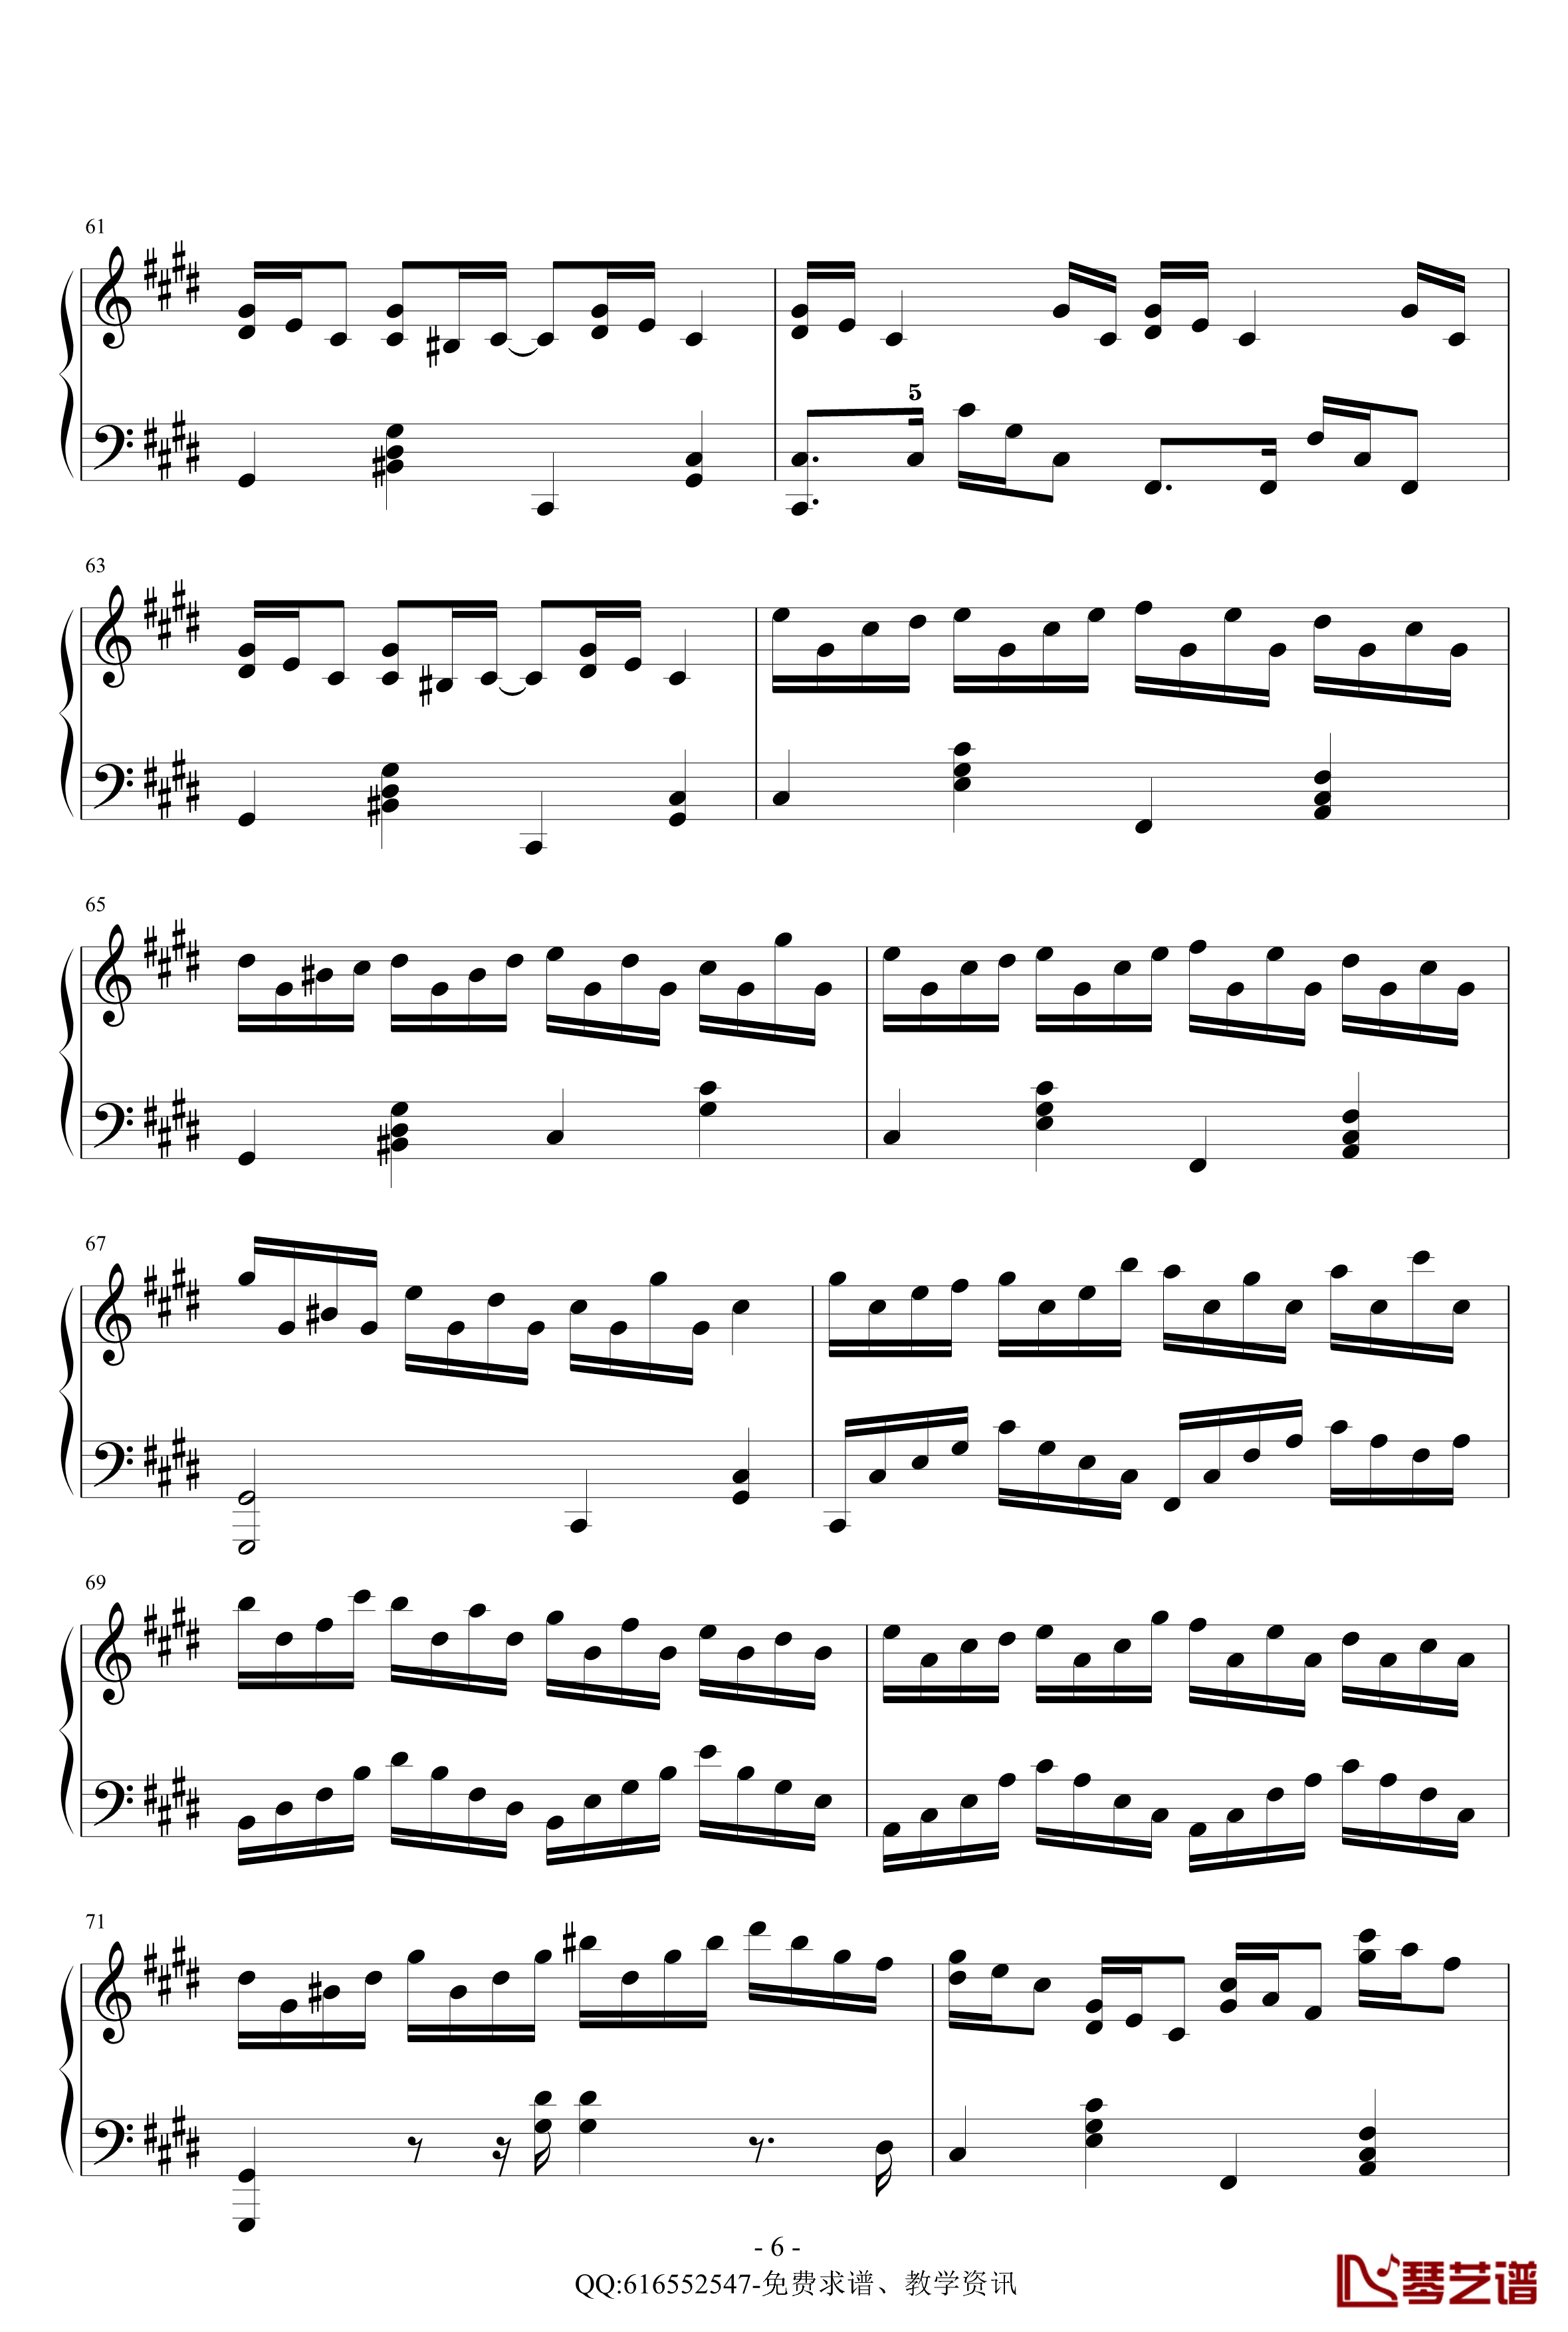 克罗地亚狂想曲钢琴谱-简化版-金龙鱼170427-马克西姆-Maksim·Mrvica